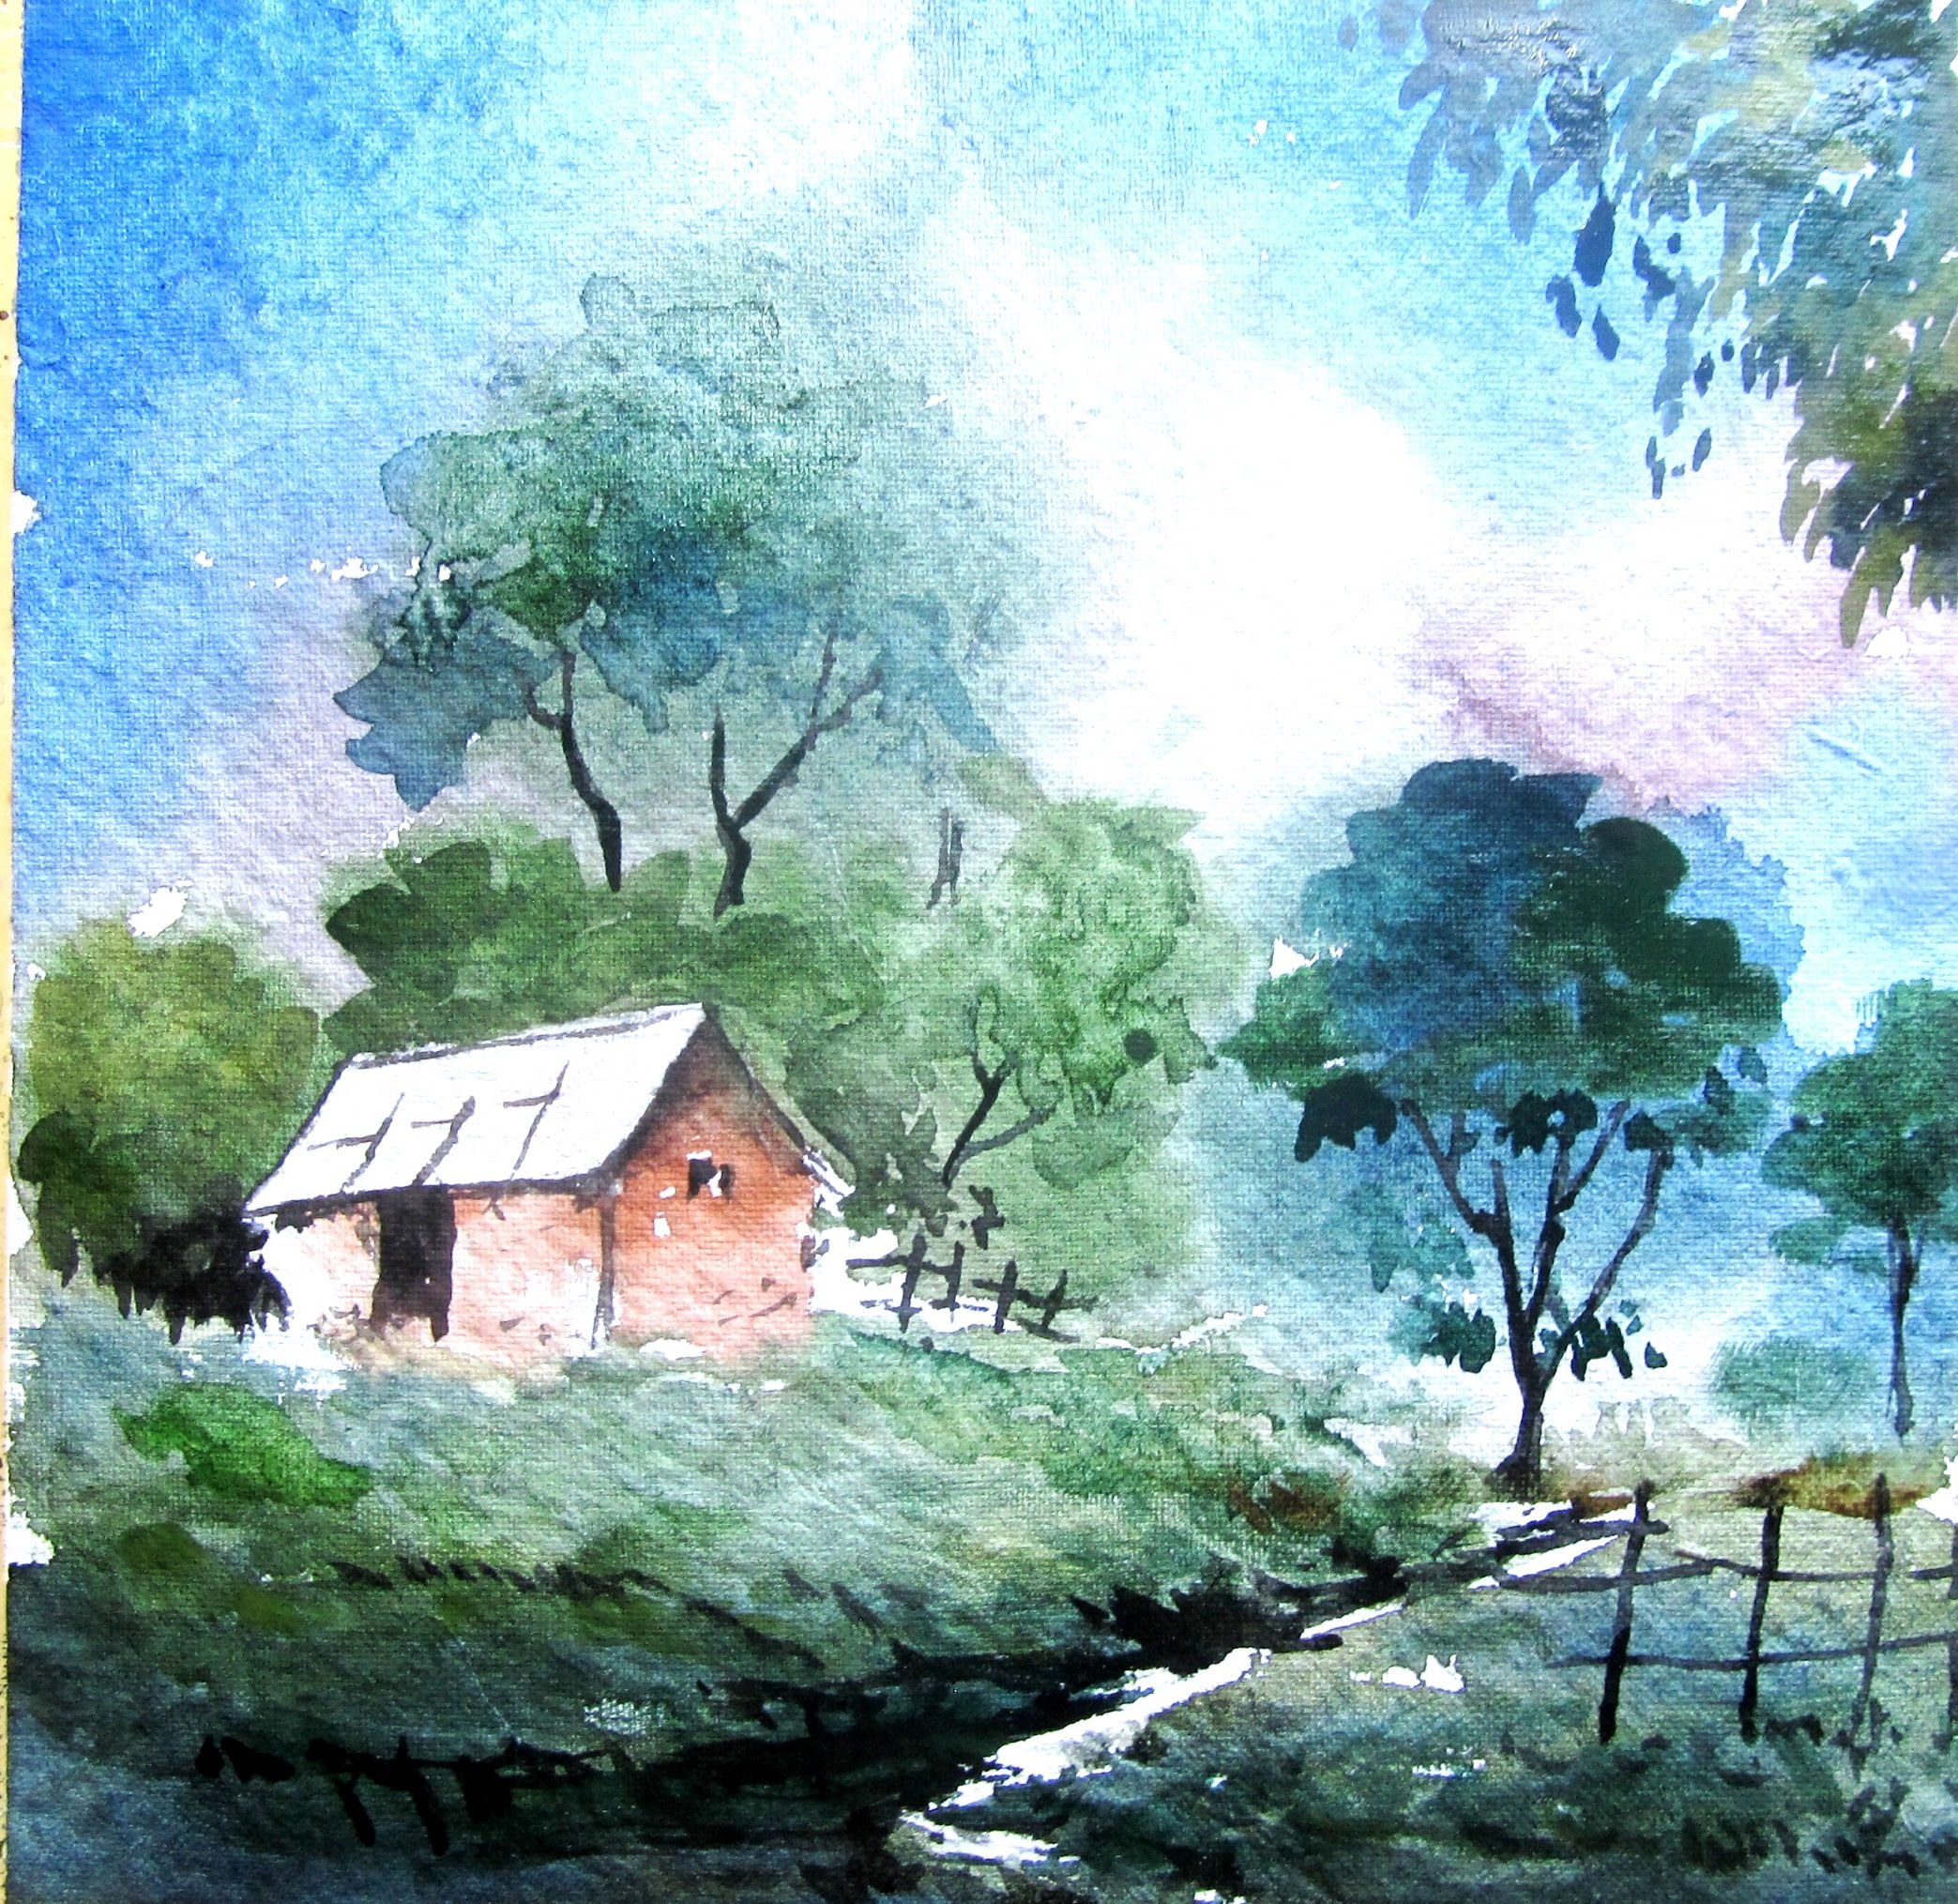 scenery paintings watercolor